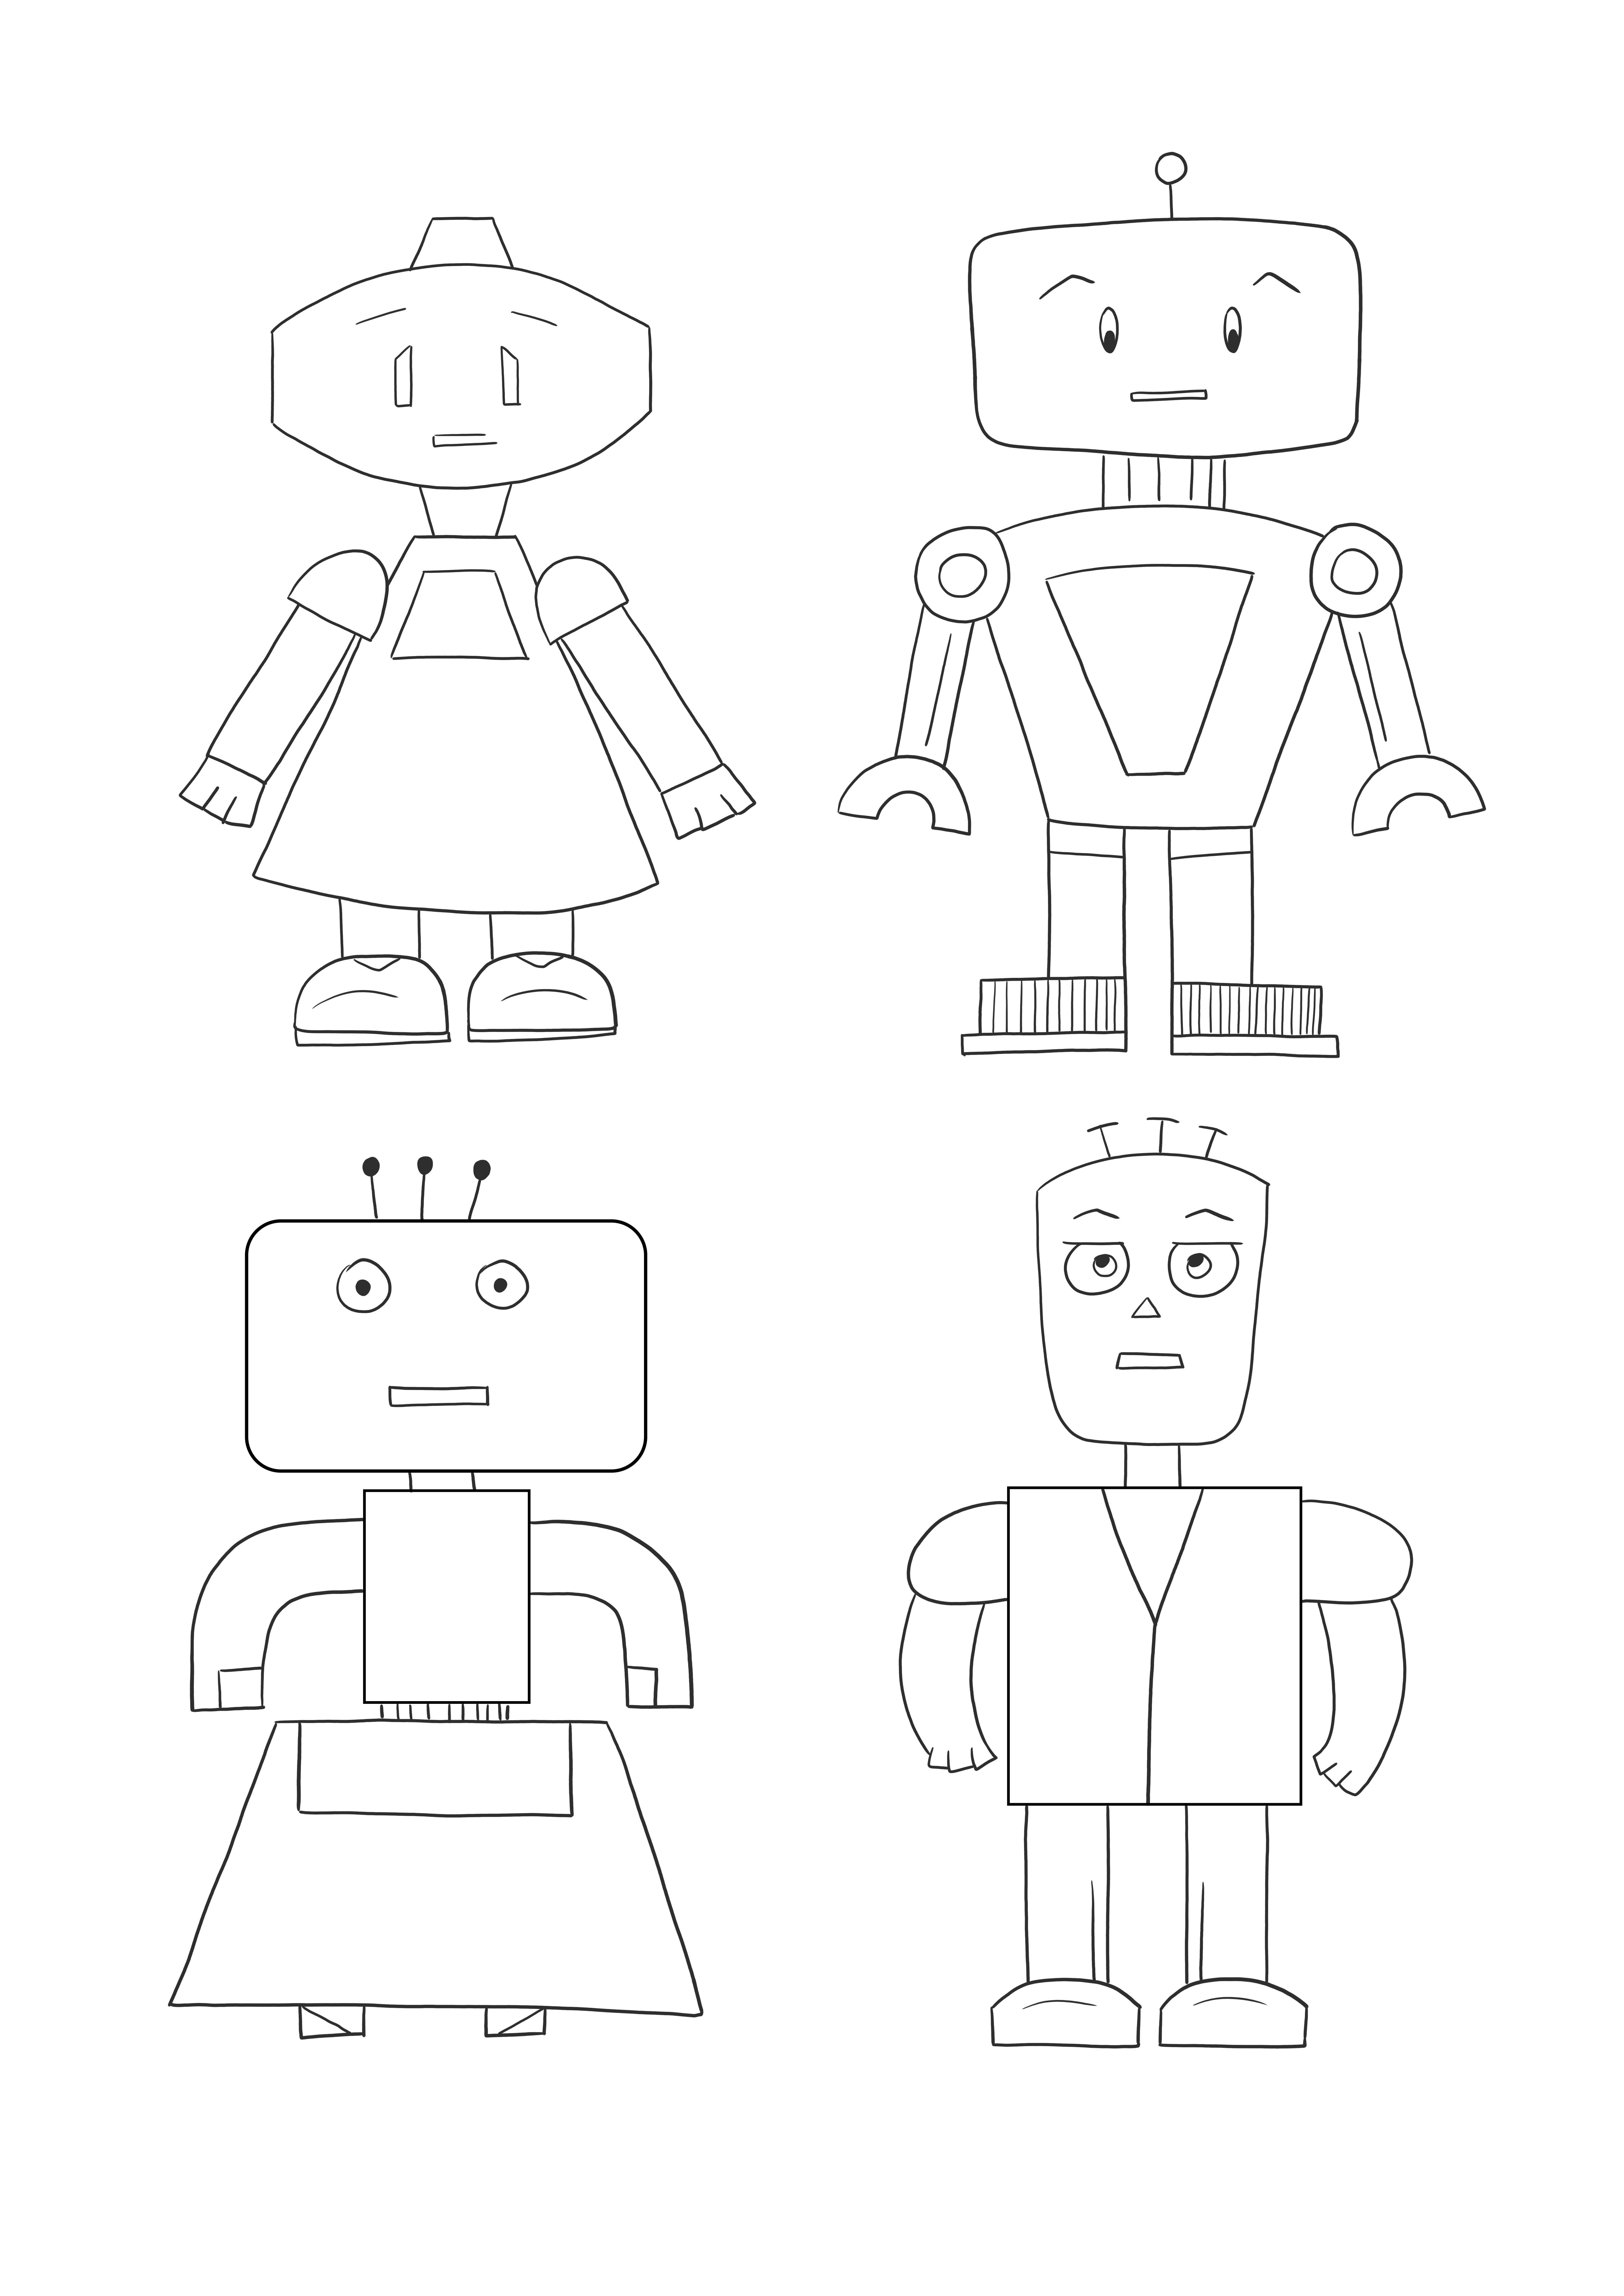 Hoja para imprimir y colorear gratis de robots lindos para niños